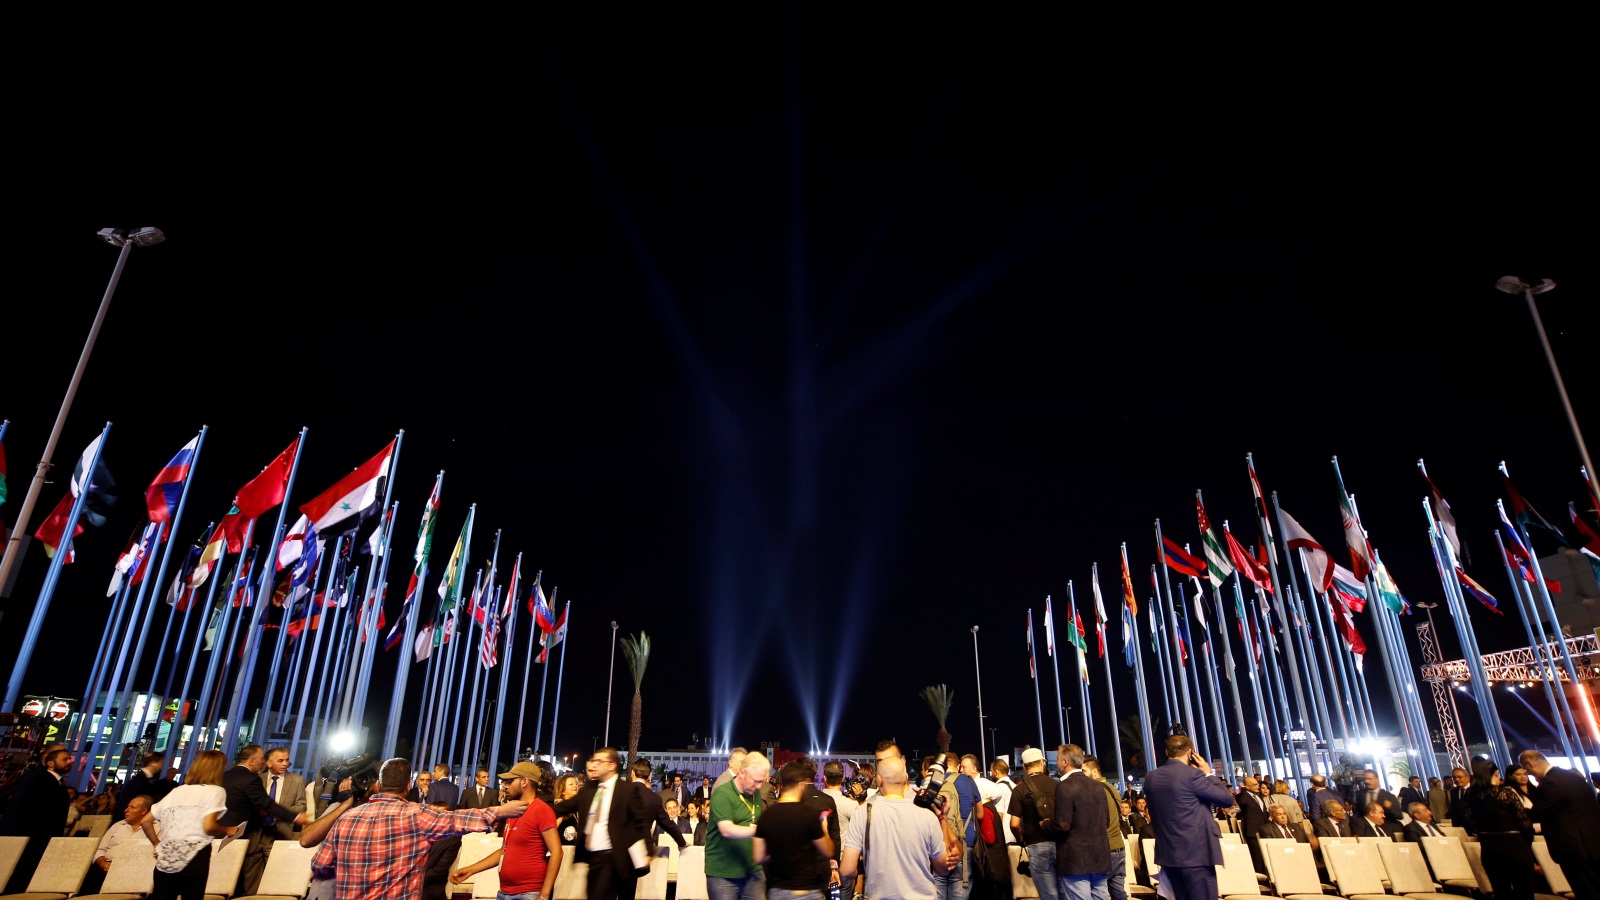 ‪أعلام الدول المشاركة في معرض دمشق الدولي العام الماضي‬ أعلام الدول المشاركة في معرض دمشق الدولي العام الماضي (رويترز)